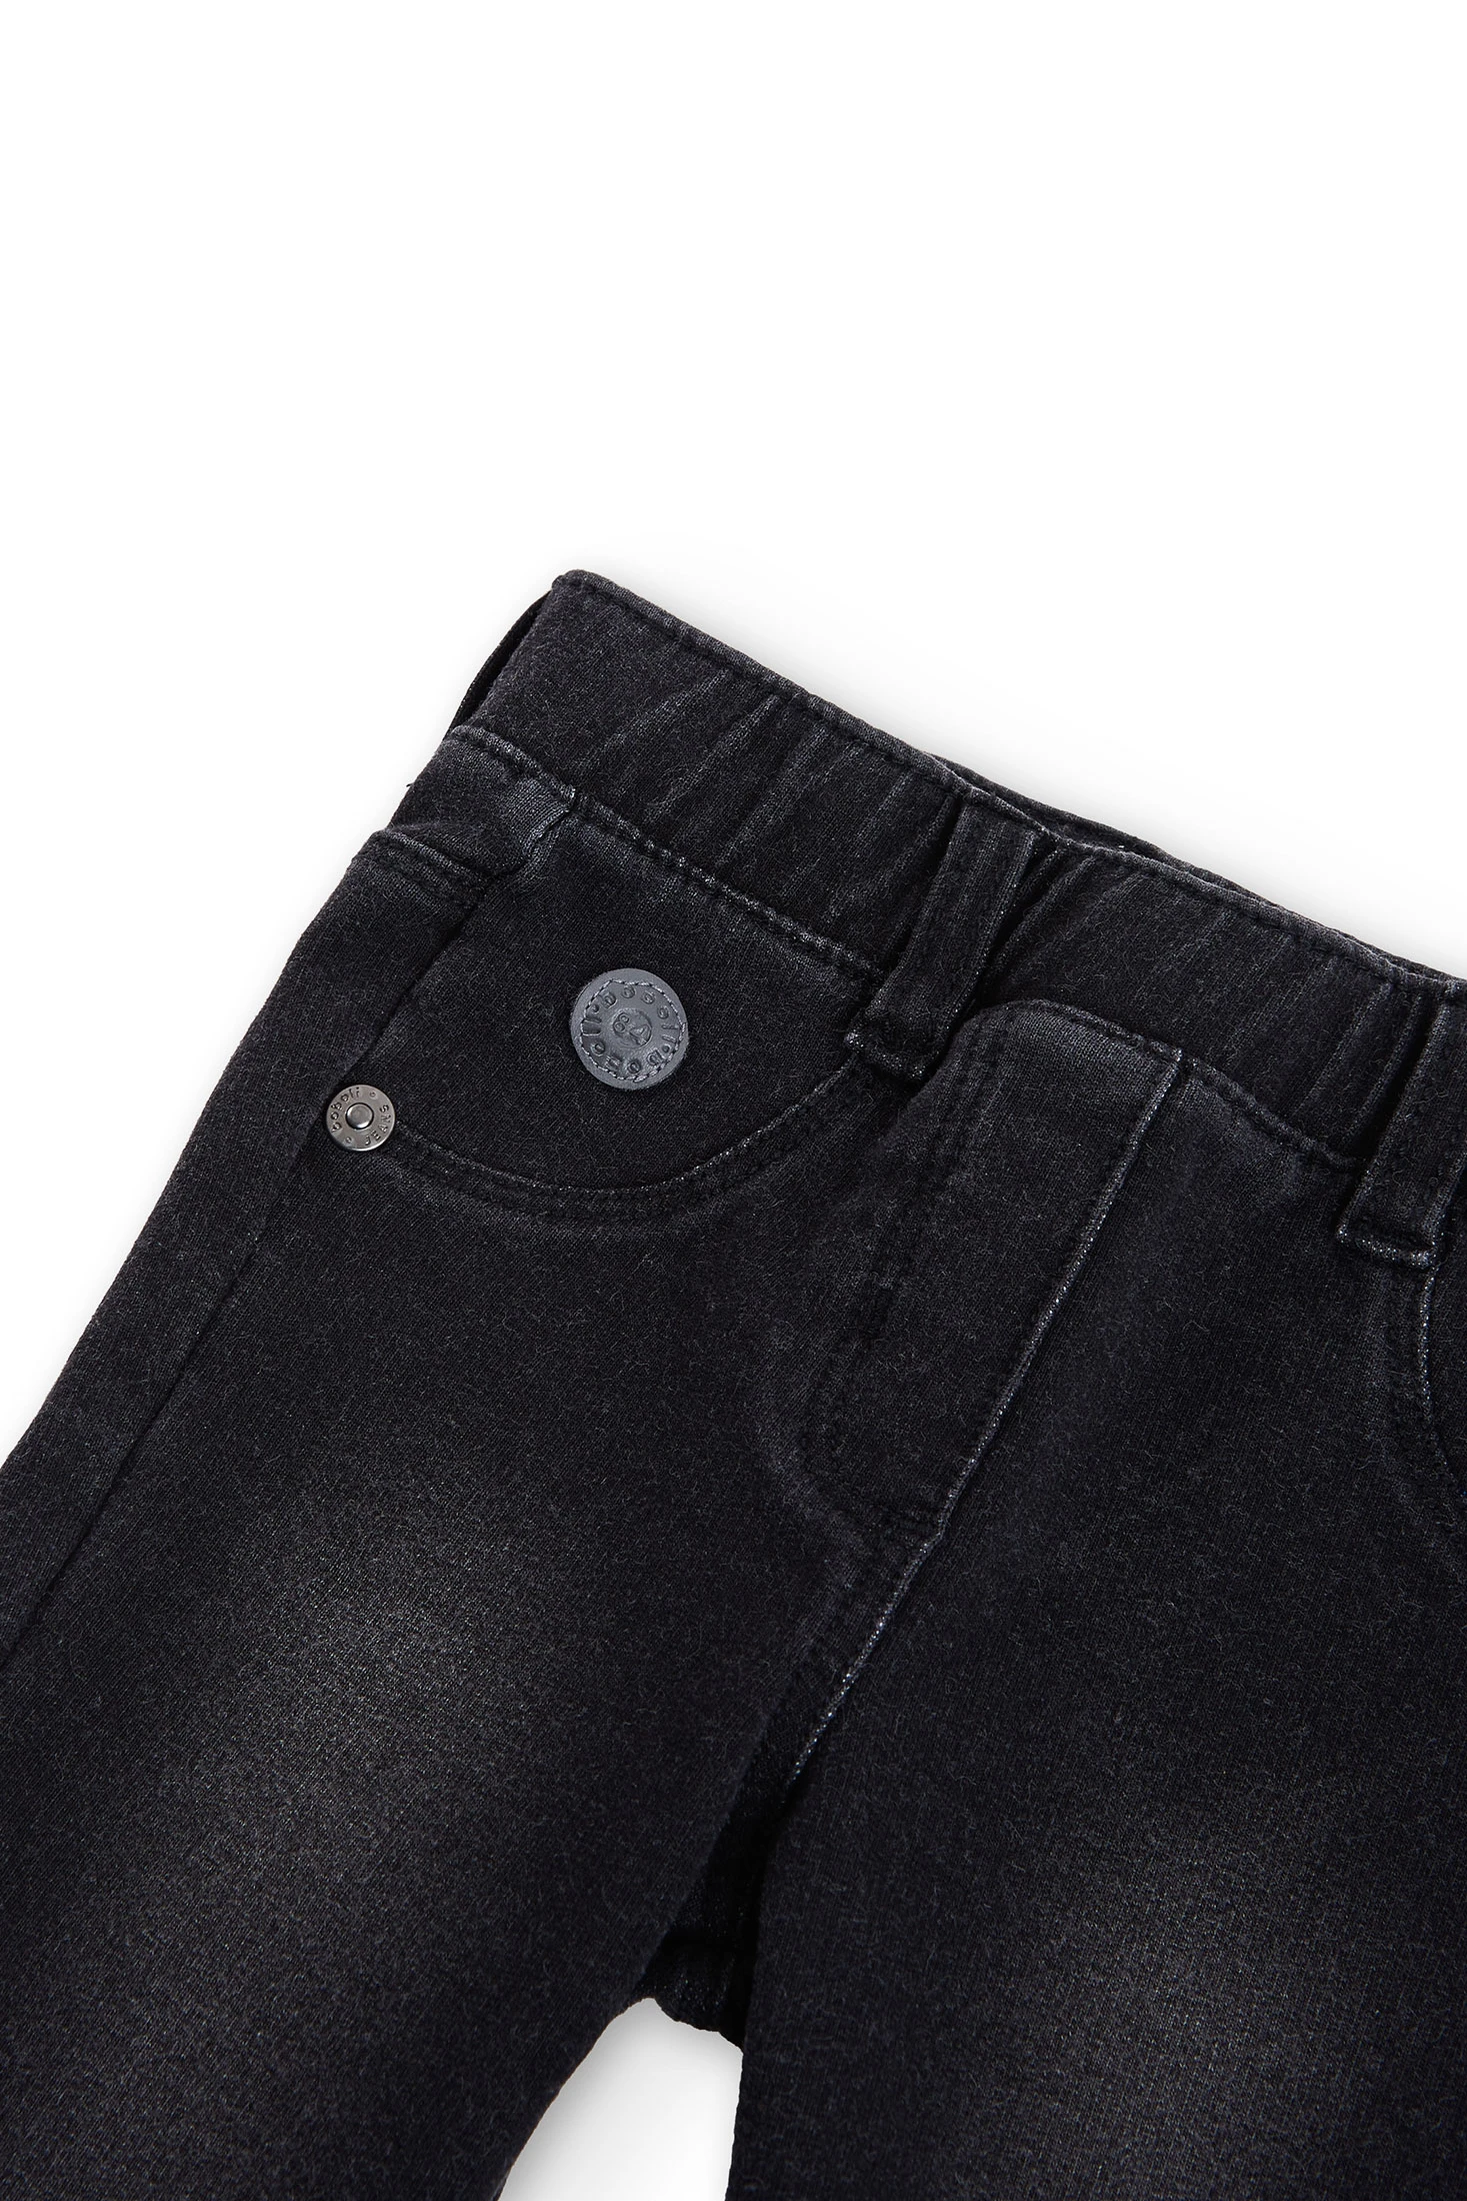 Pantalón chándal niña, felpa interior, color negro, goma cintura brillante,  de la marca Boboli